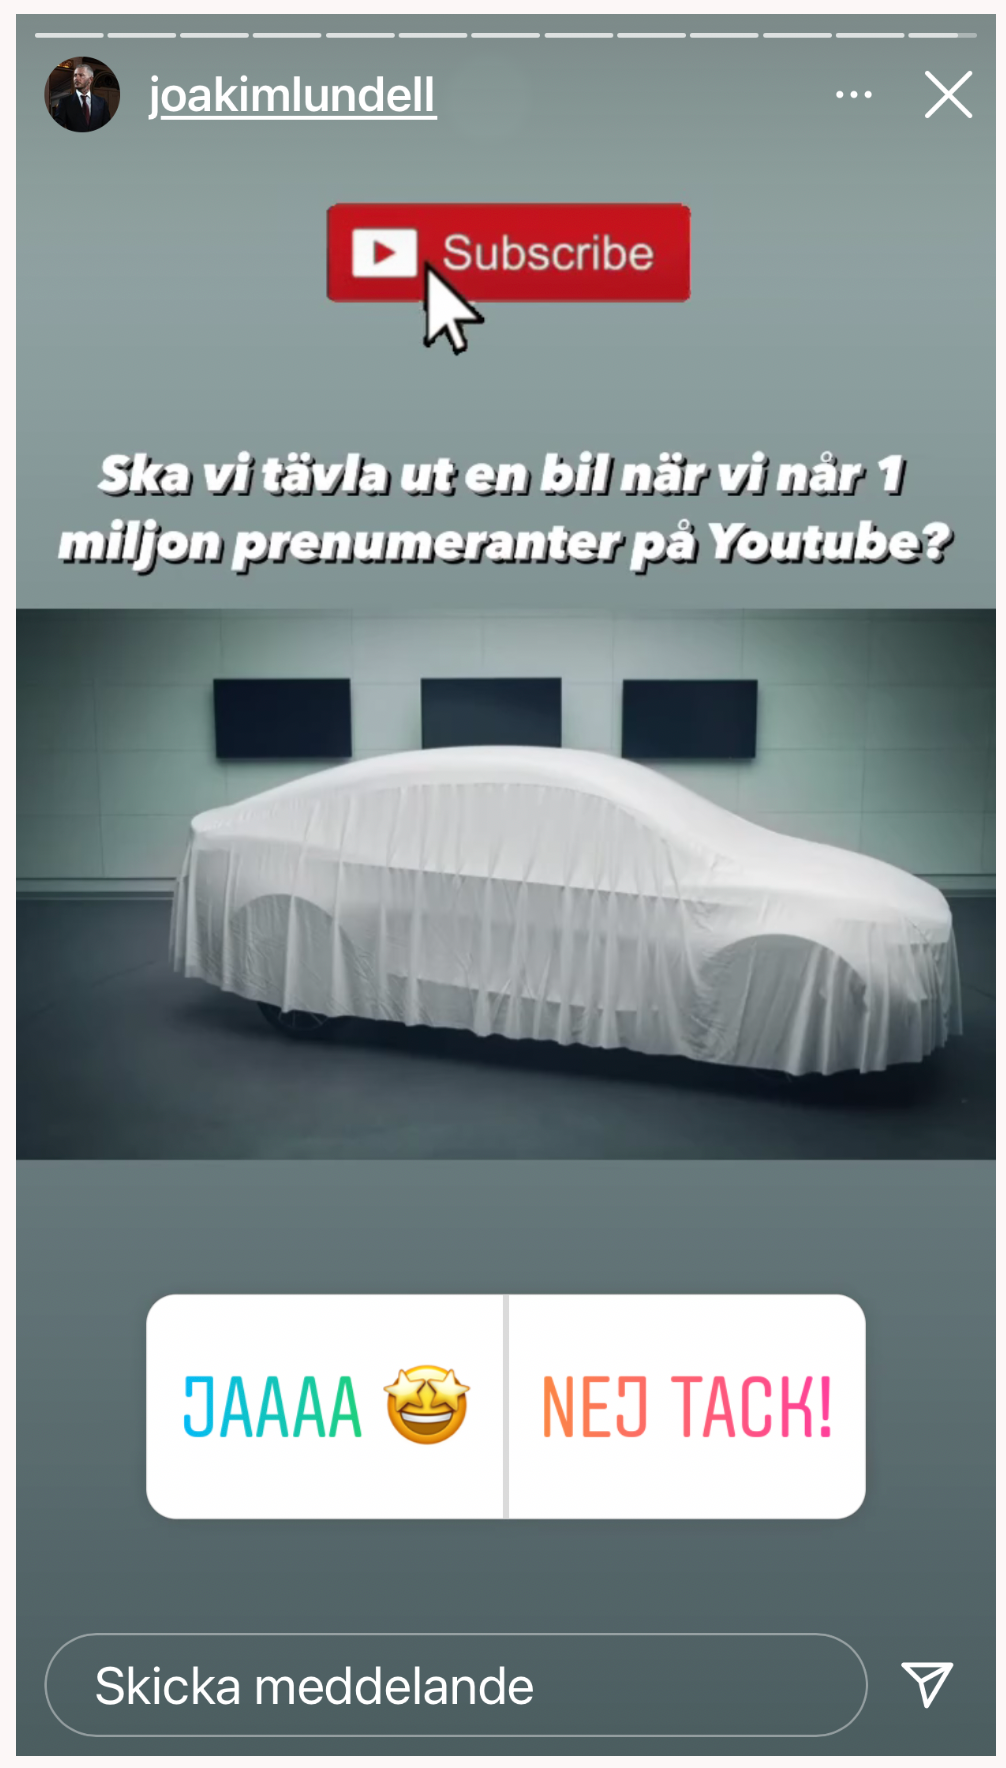 Joakim Lundell: Ska vi tävla ut en bil när vi når 1 miljoner prenumeranter på Youtube?